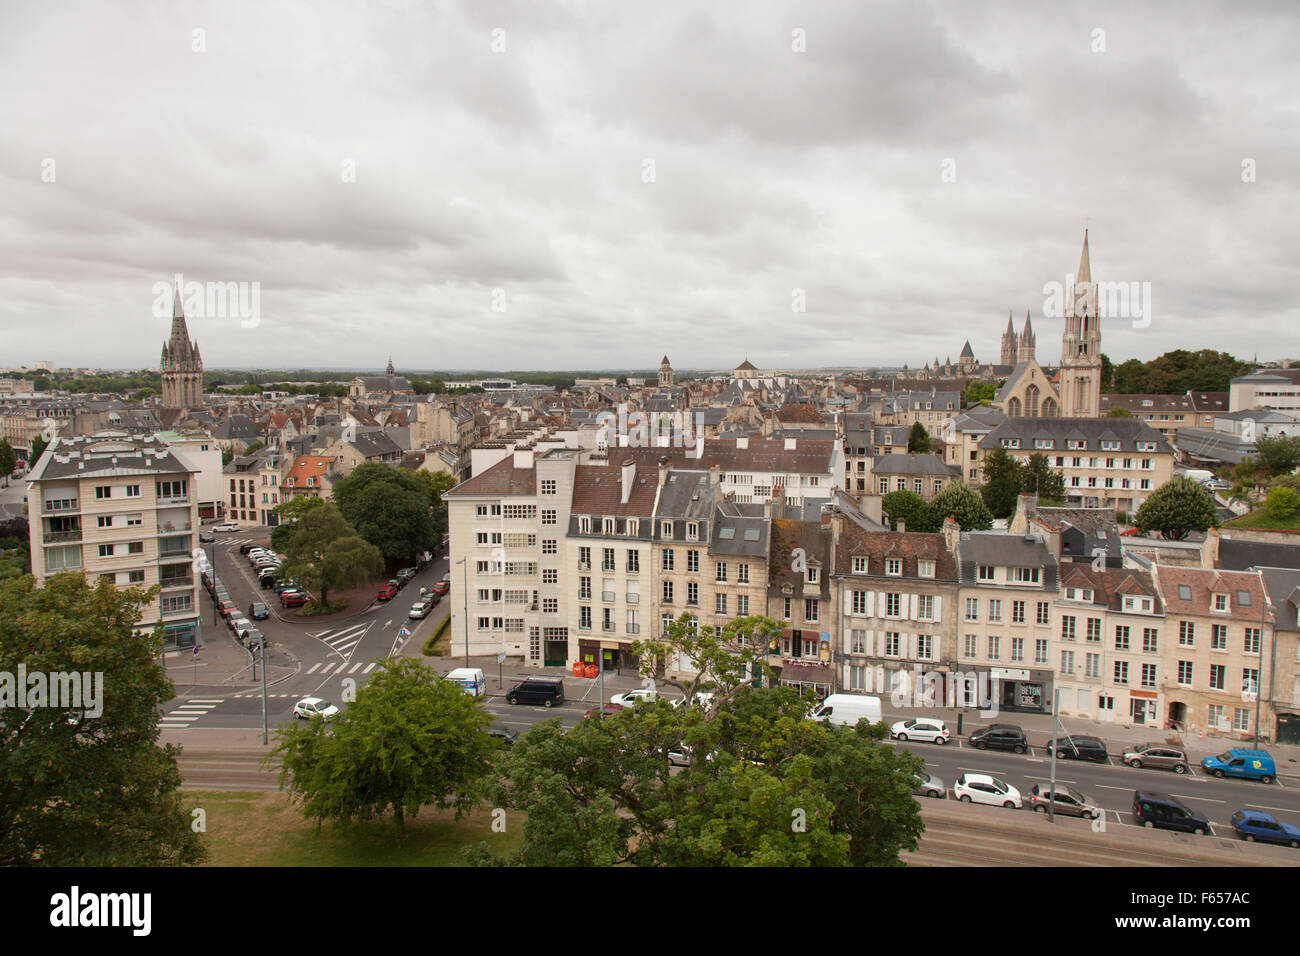 La ciudad francesa de Caen fotografiado desde las murallas del castillo Foto de stock